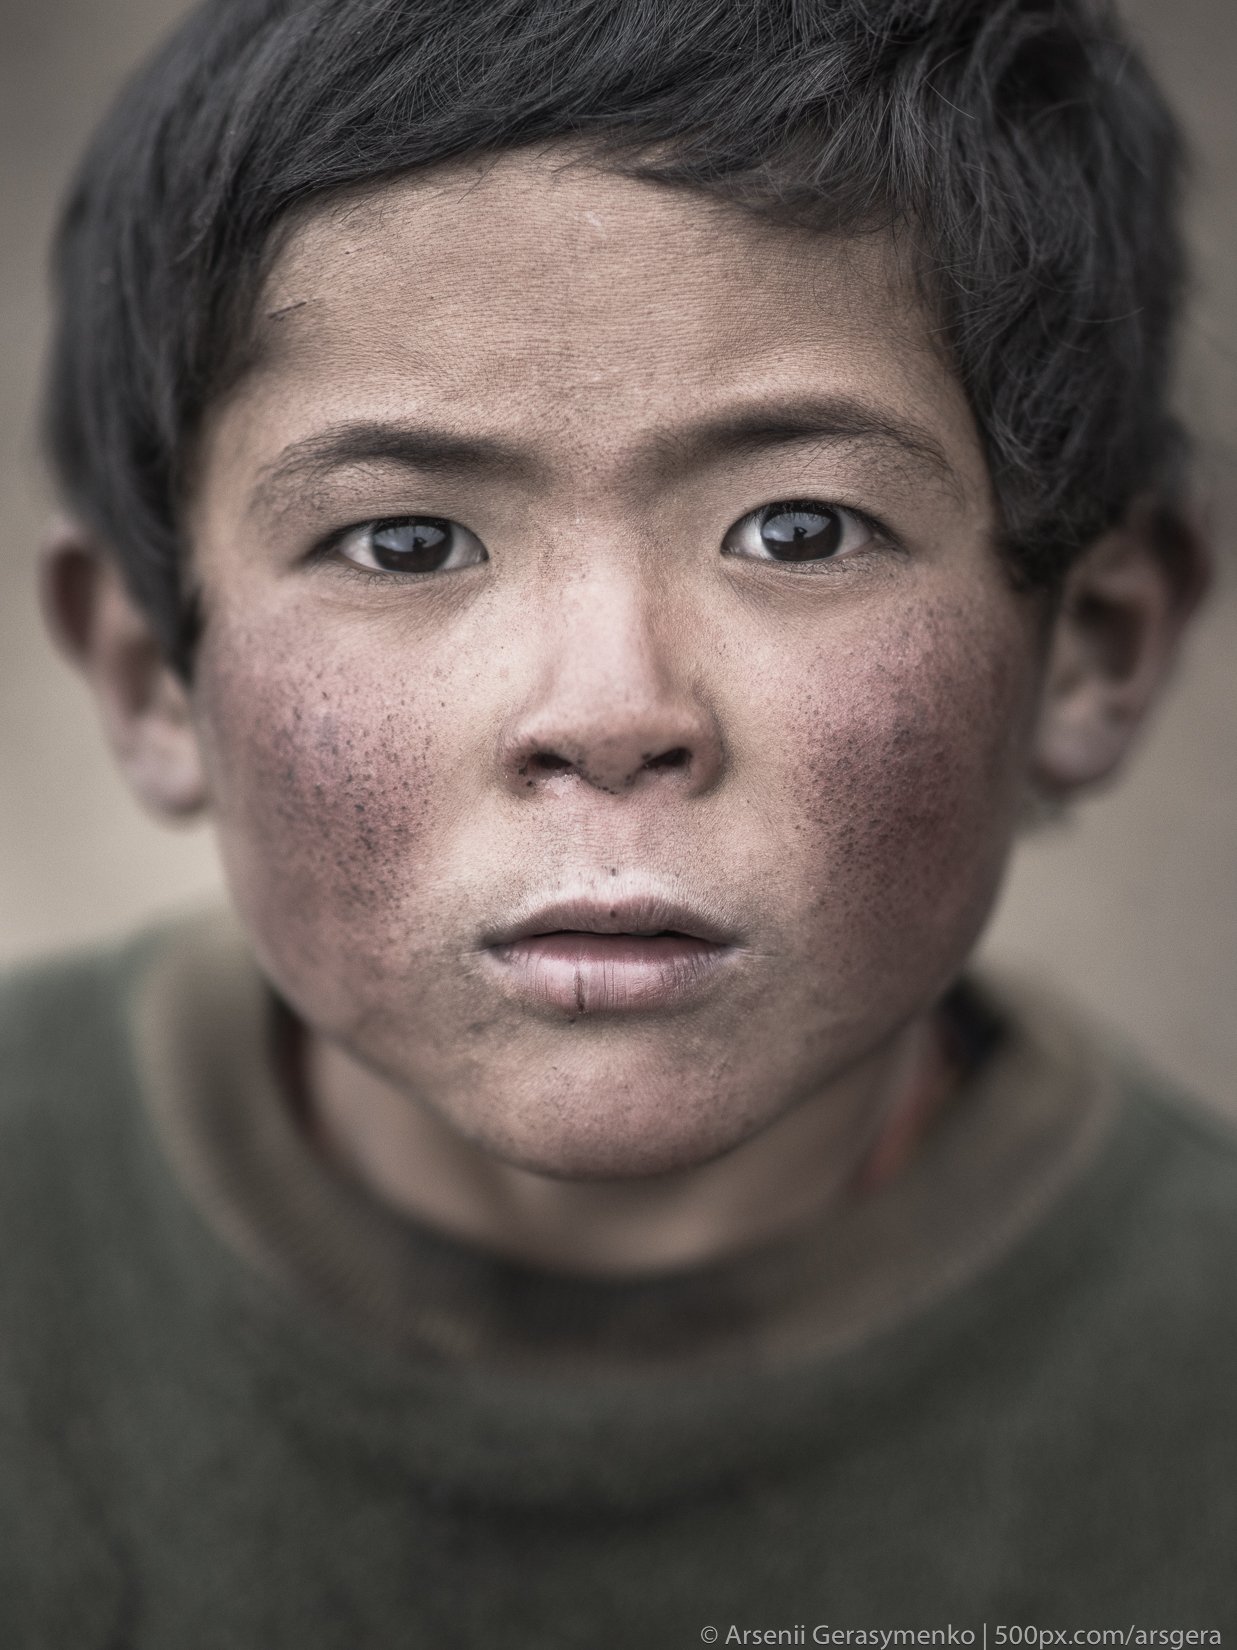 sherpa, nepal, boy, portrait, headshot, people, himalayas, Арсений Герасименко